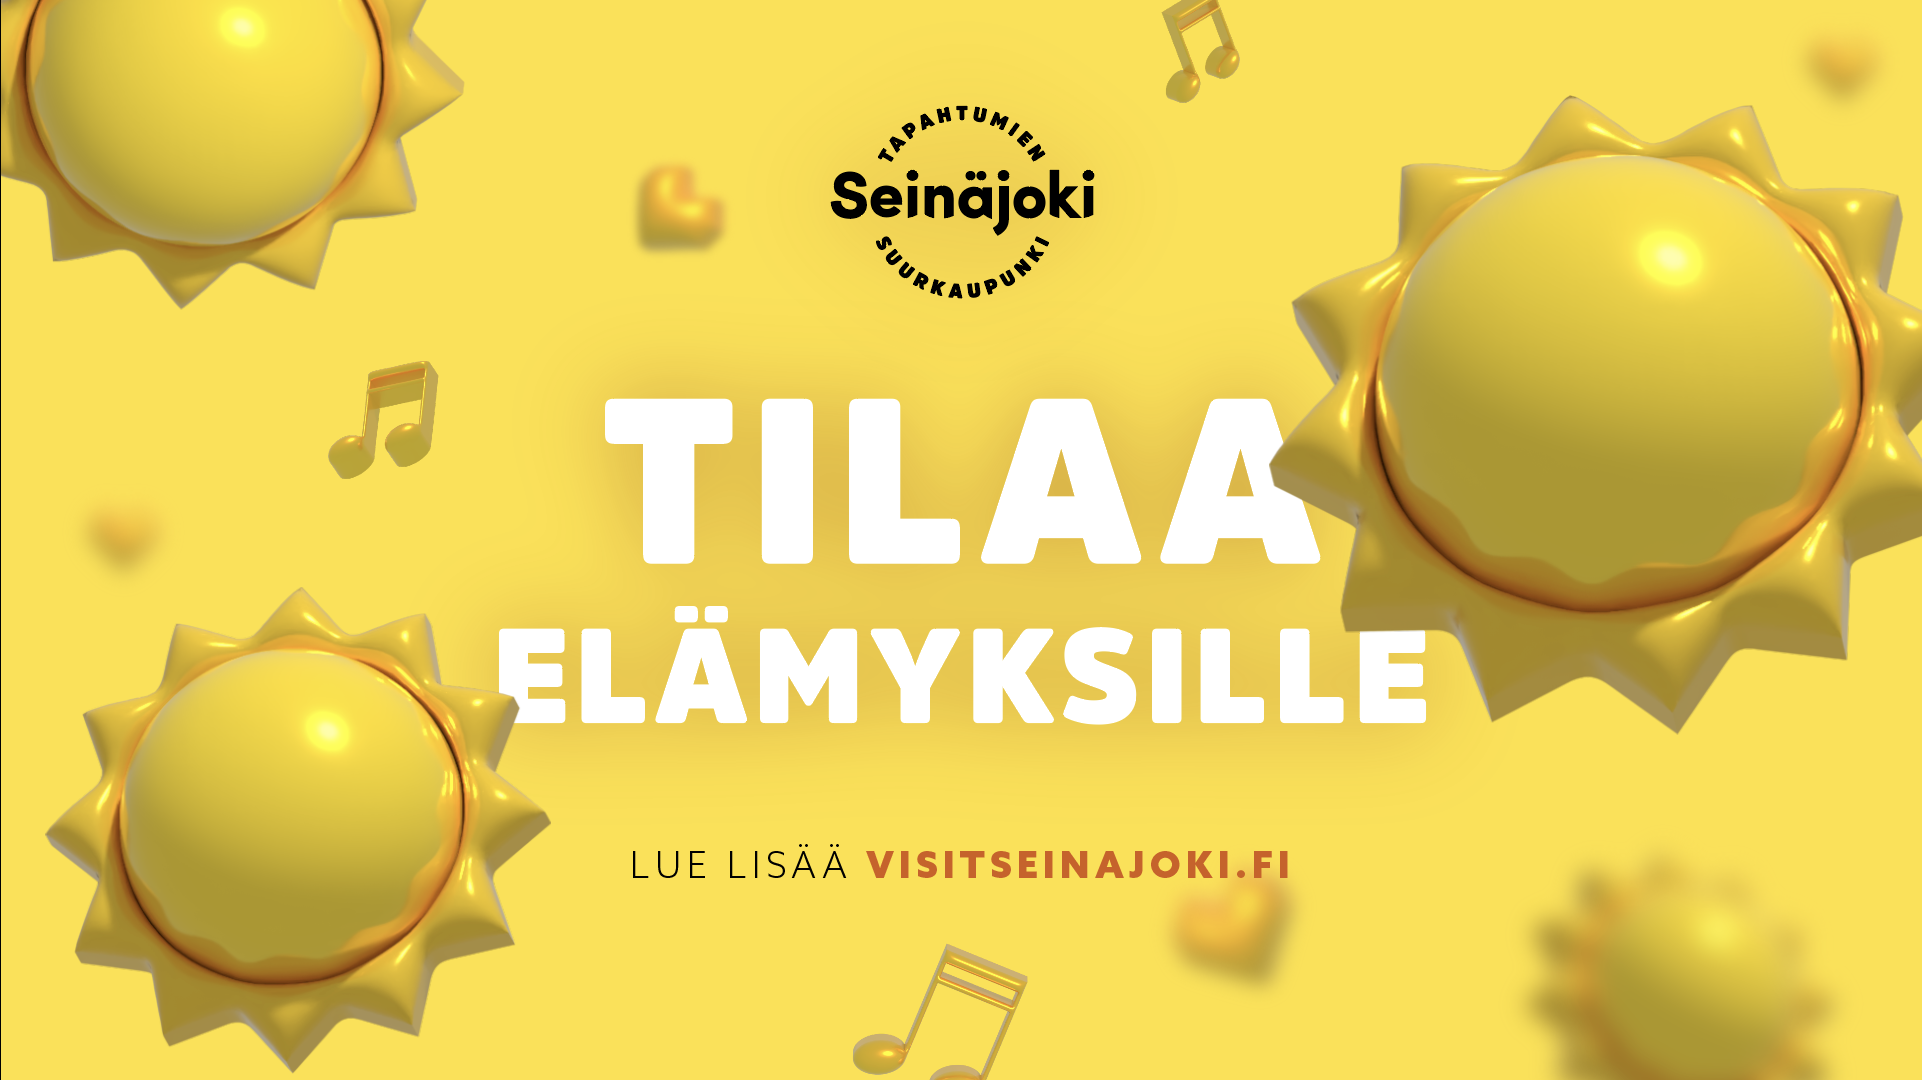 Tilaa elämyksille banneri. Teksti: Tilaa elämyksille. Lue lisää Visitseinäjoki.fi